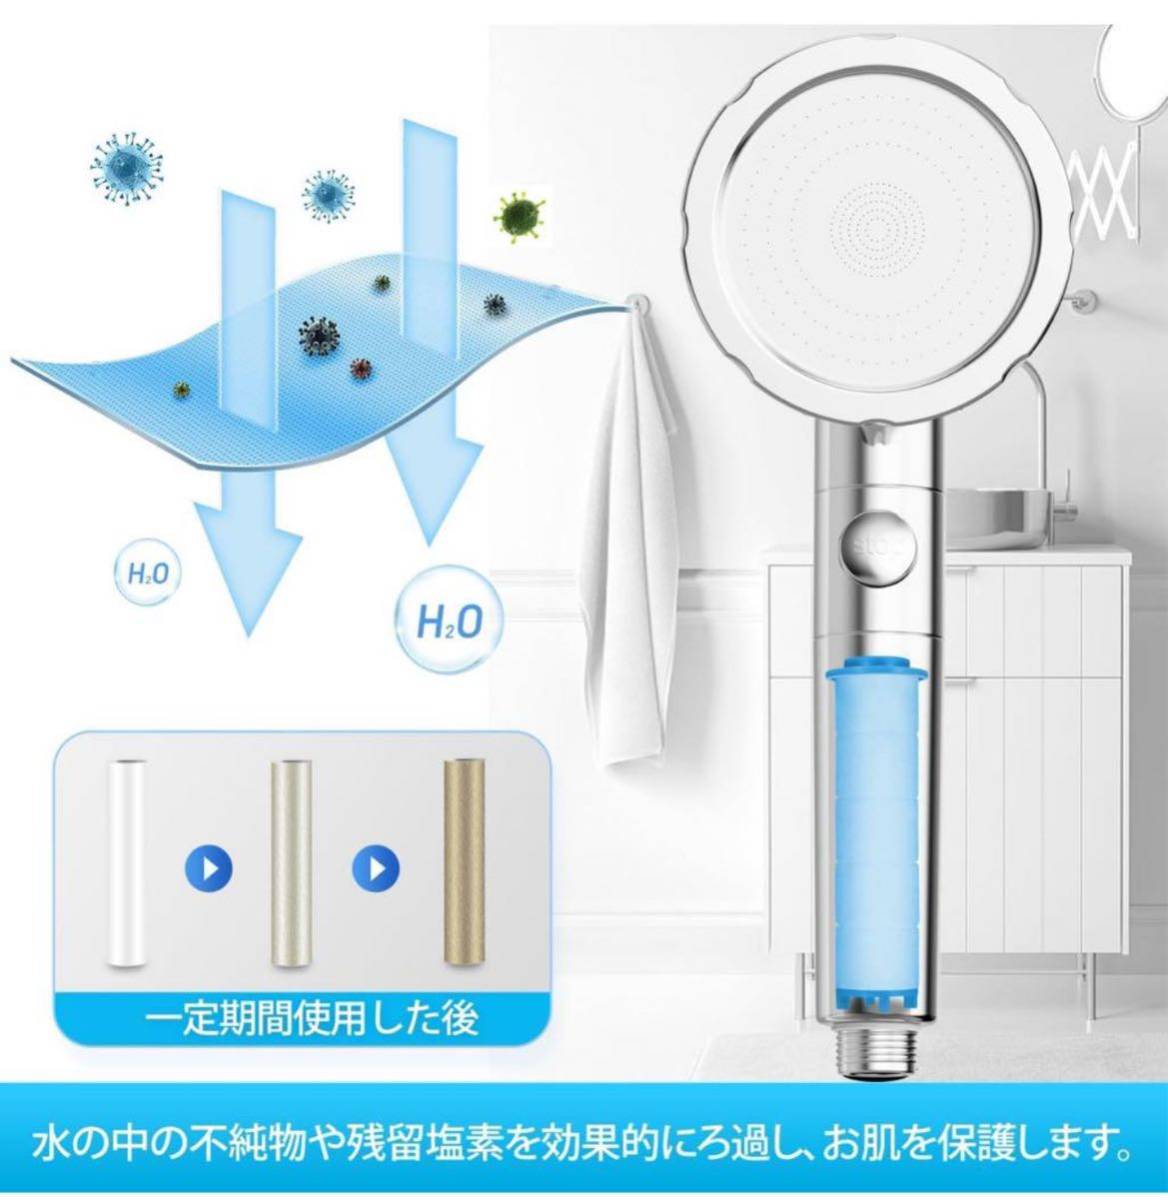 シャワーヘッド 塩素除去 3段階モード 浄水 止水ボタン 特殊洗浄モード付き